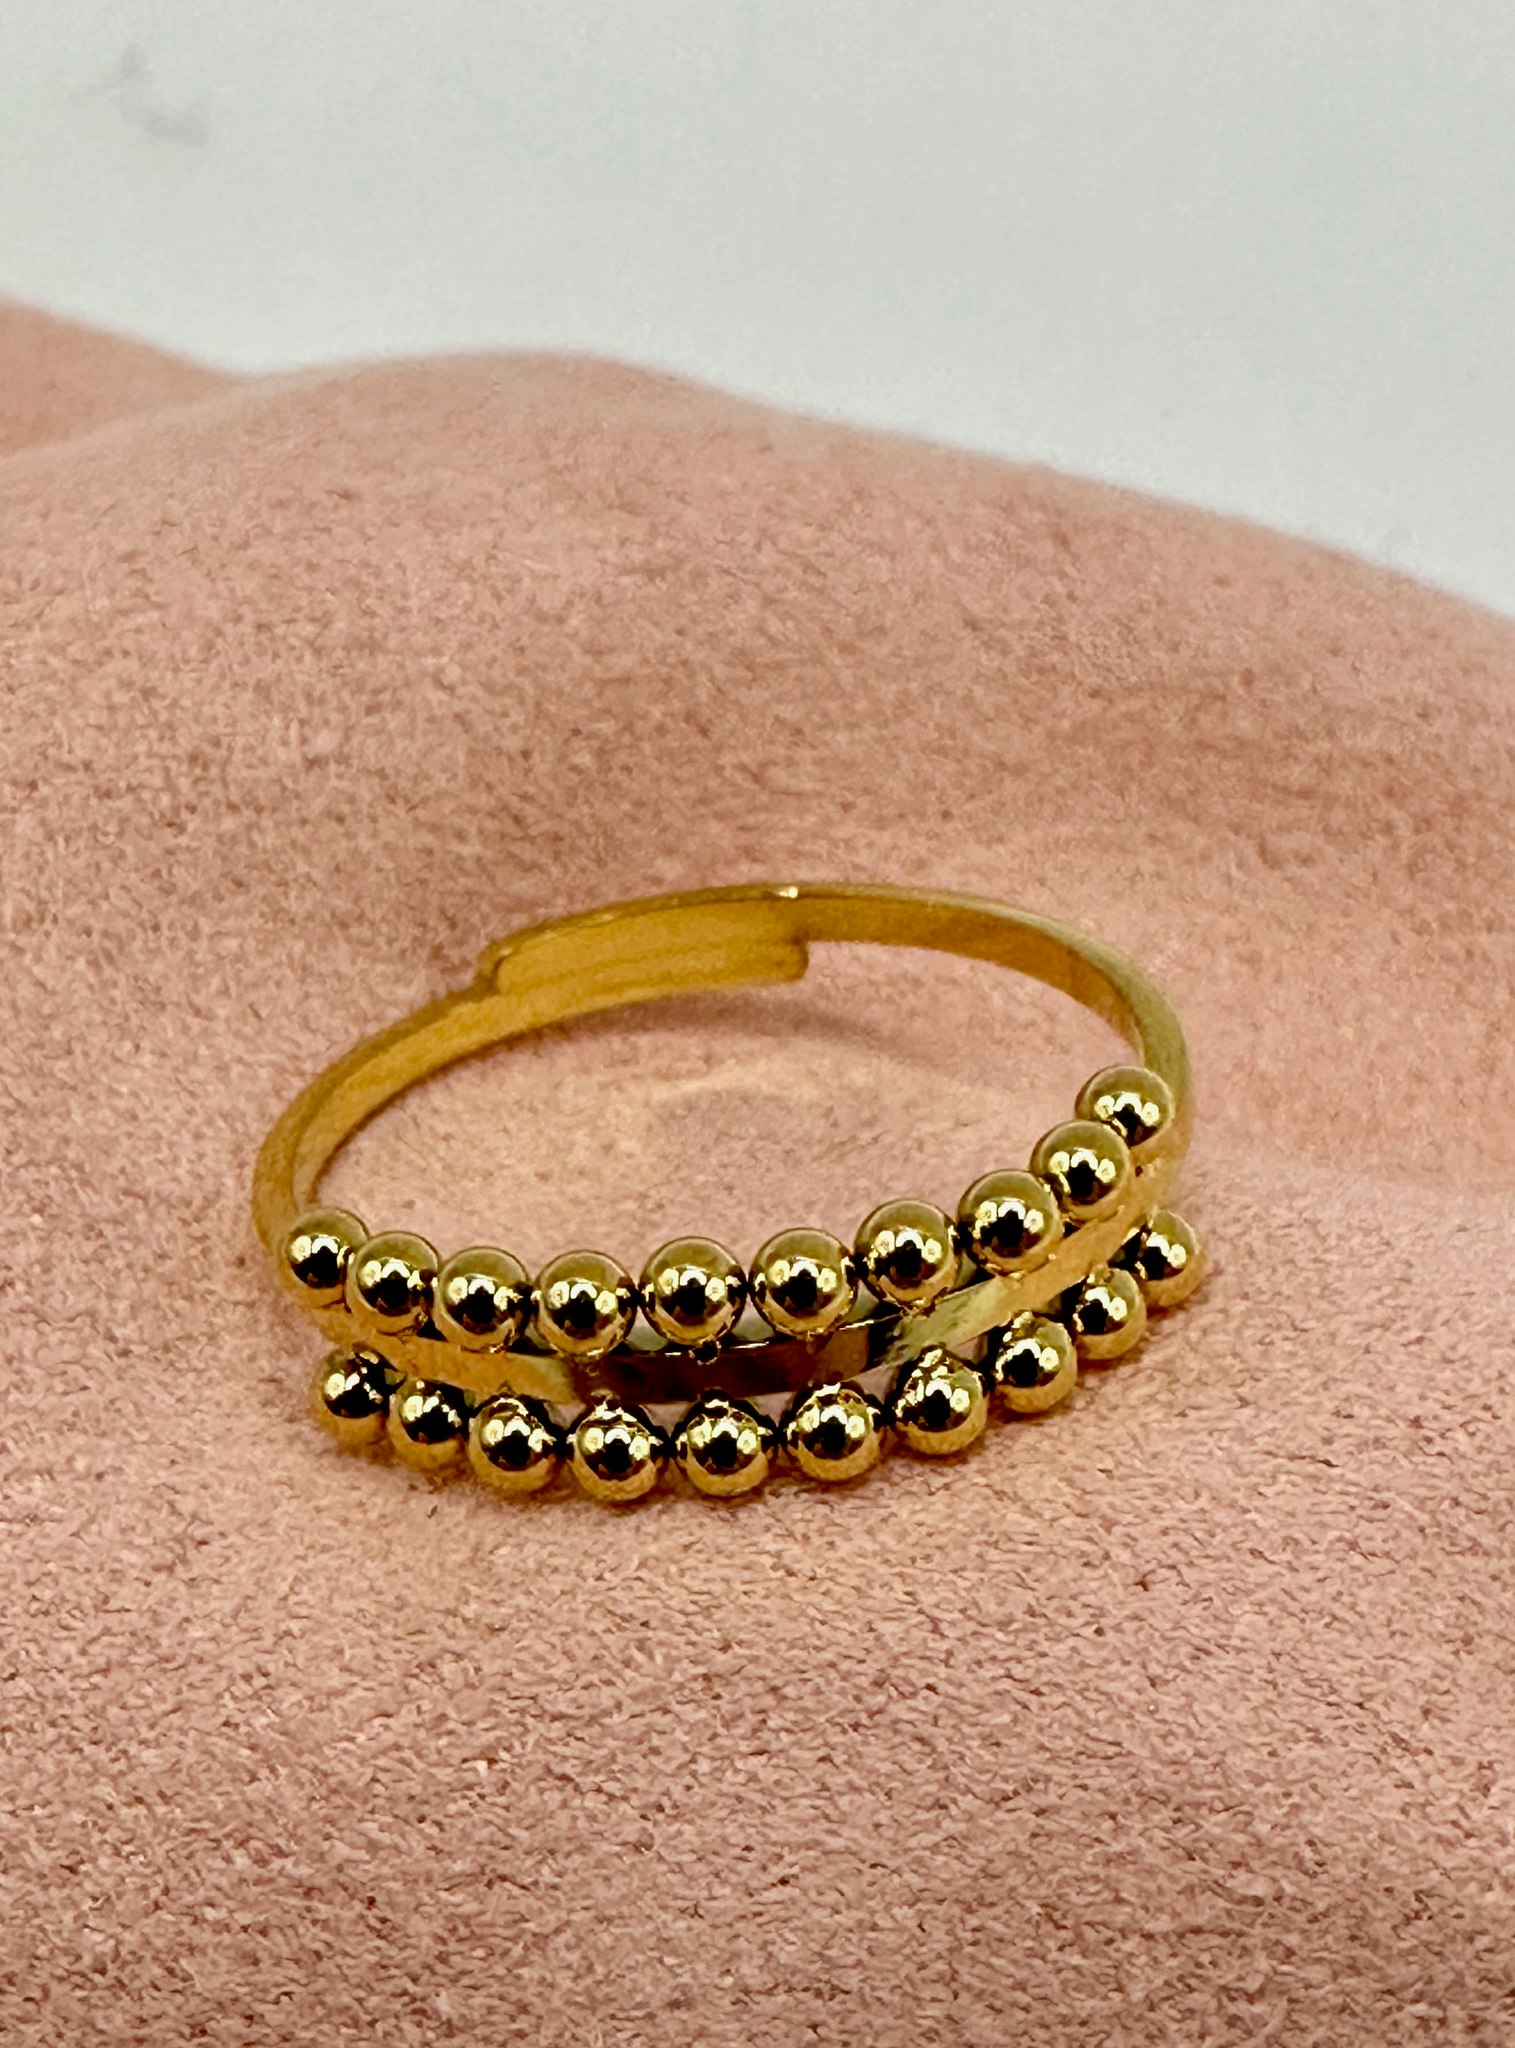 Stål justerbar ring med prickig kant - guld